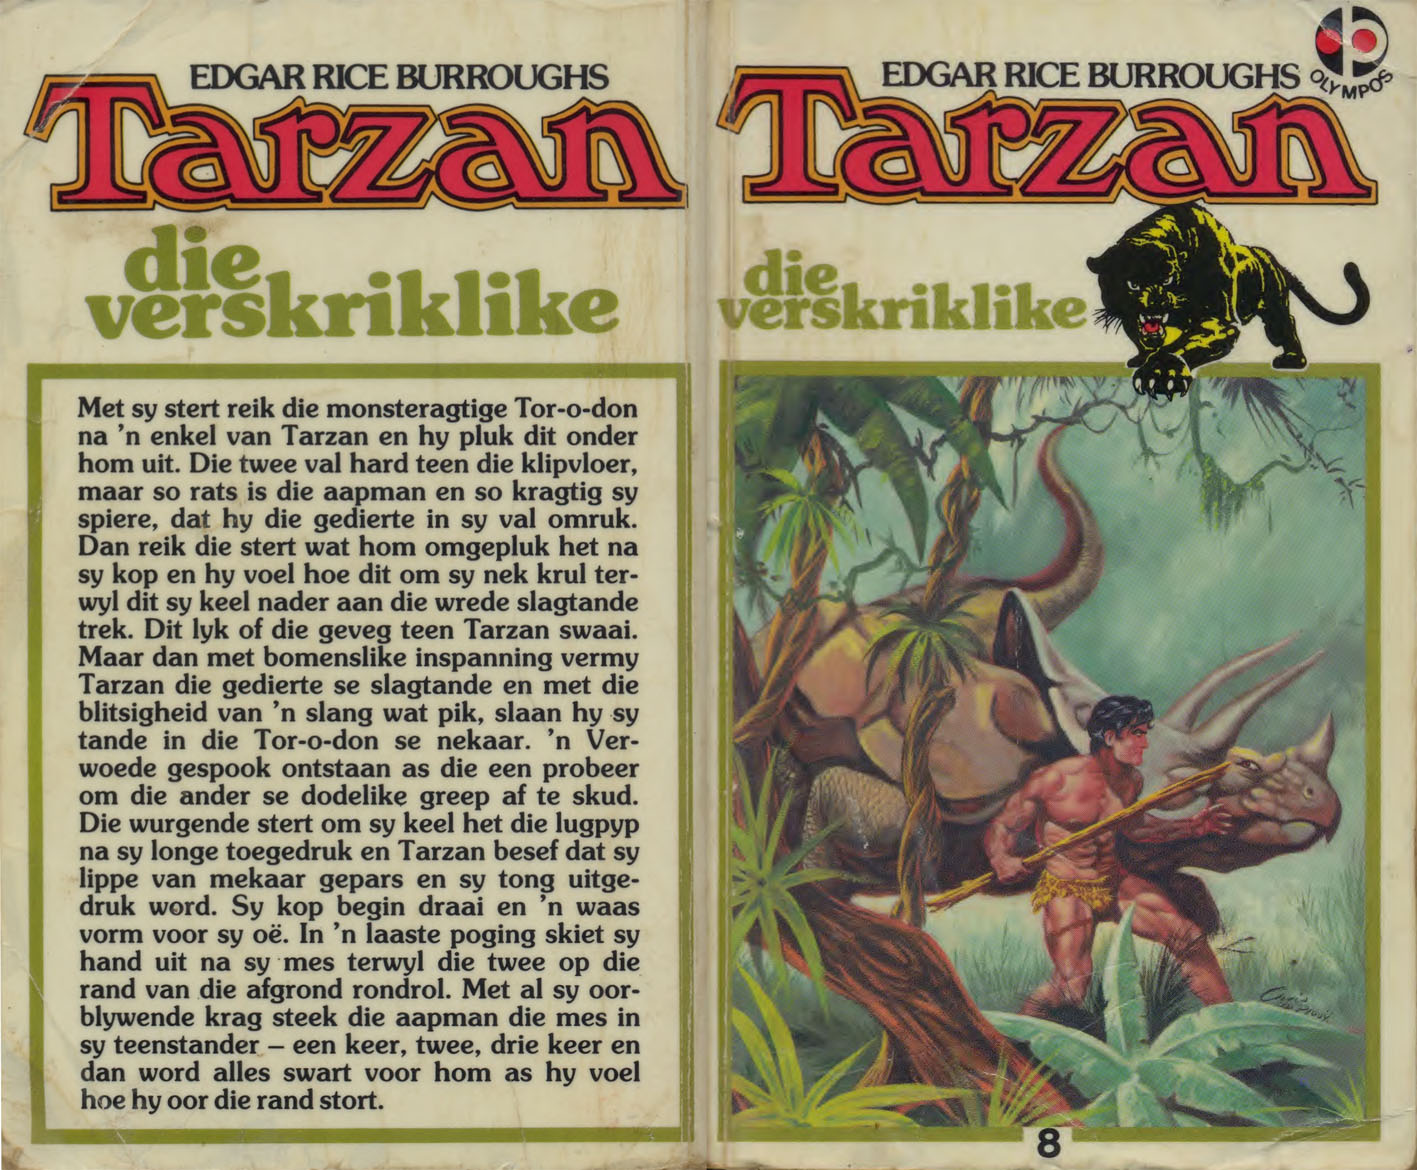 8. Tarzan die verskriklike - Edgar Rice Burroughs (1984)